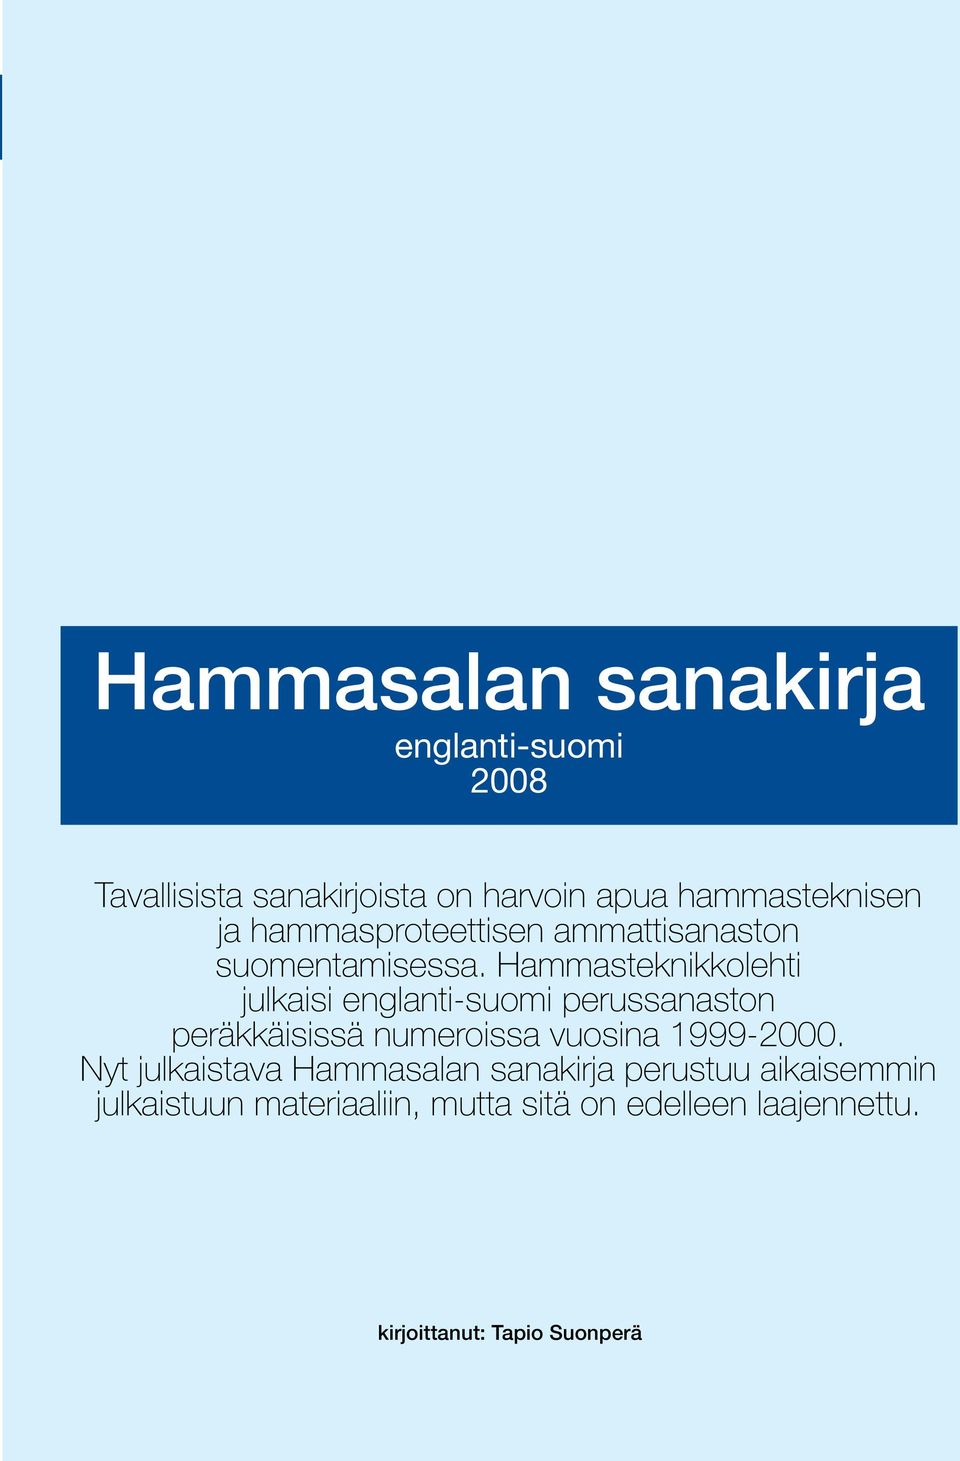 Hammasteknikkolehti julkaisi englanti-suomi perussanaston peräkkäisissä numeroissa vuosina 1999-2000.